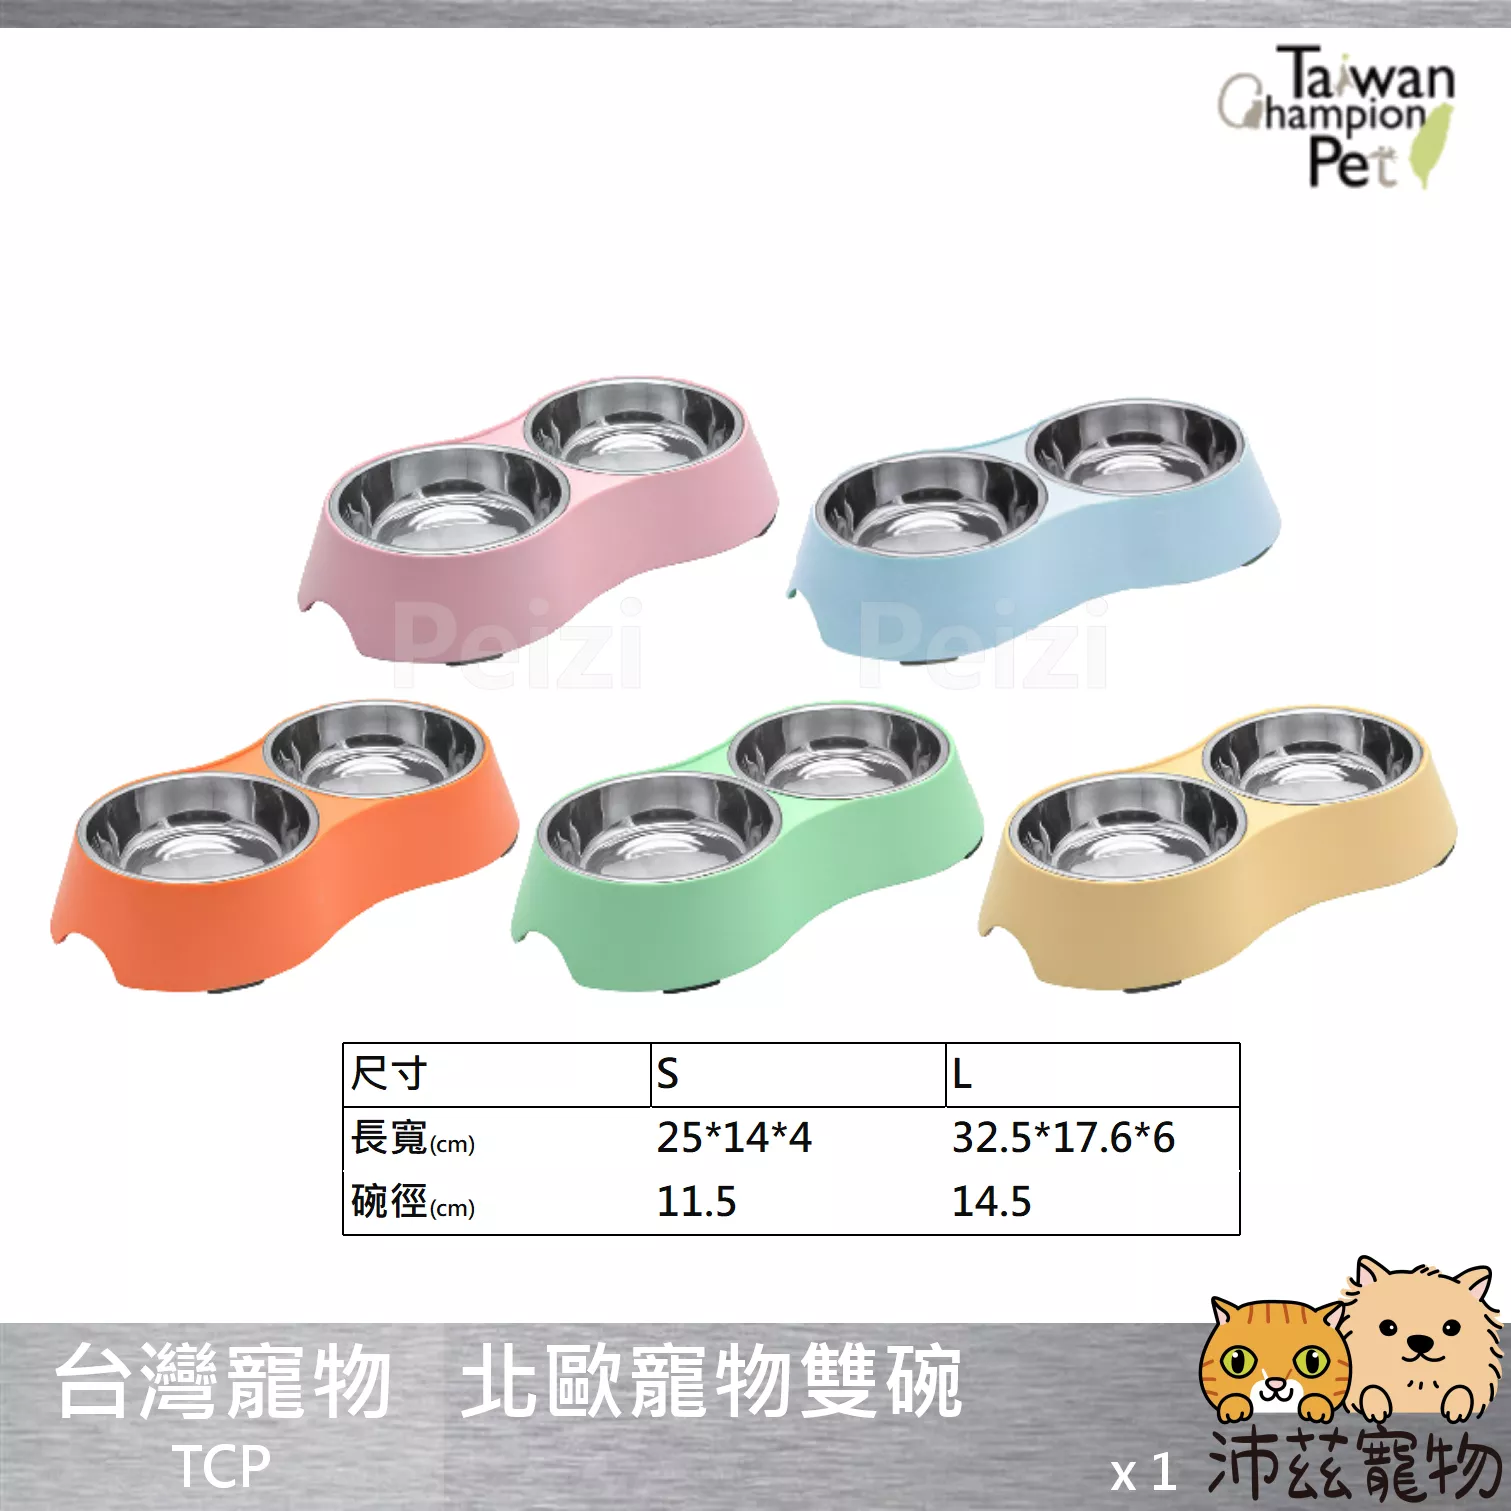 【台灣寵物 TCP 北歐寵物雙碗】雙口碗 鐵碗 素面 貓用品 狗用品 貓 狗 用品